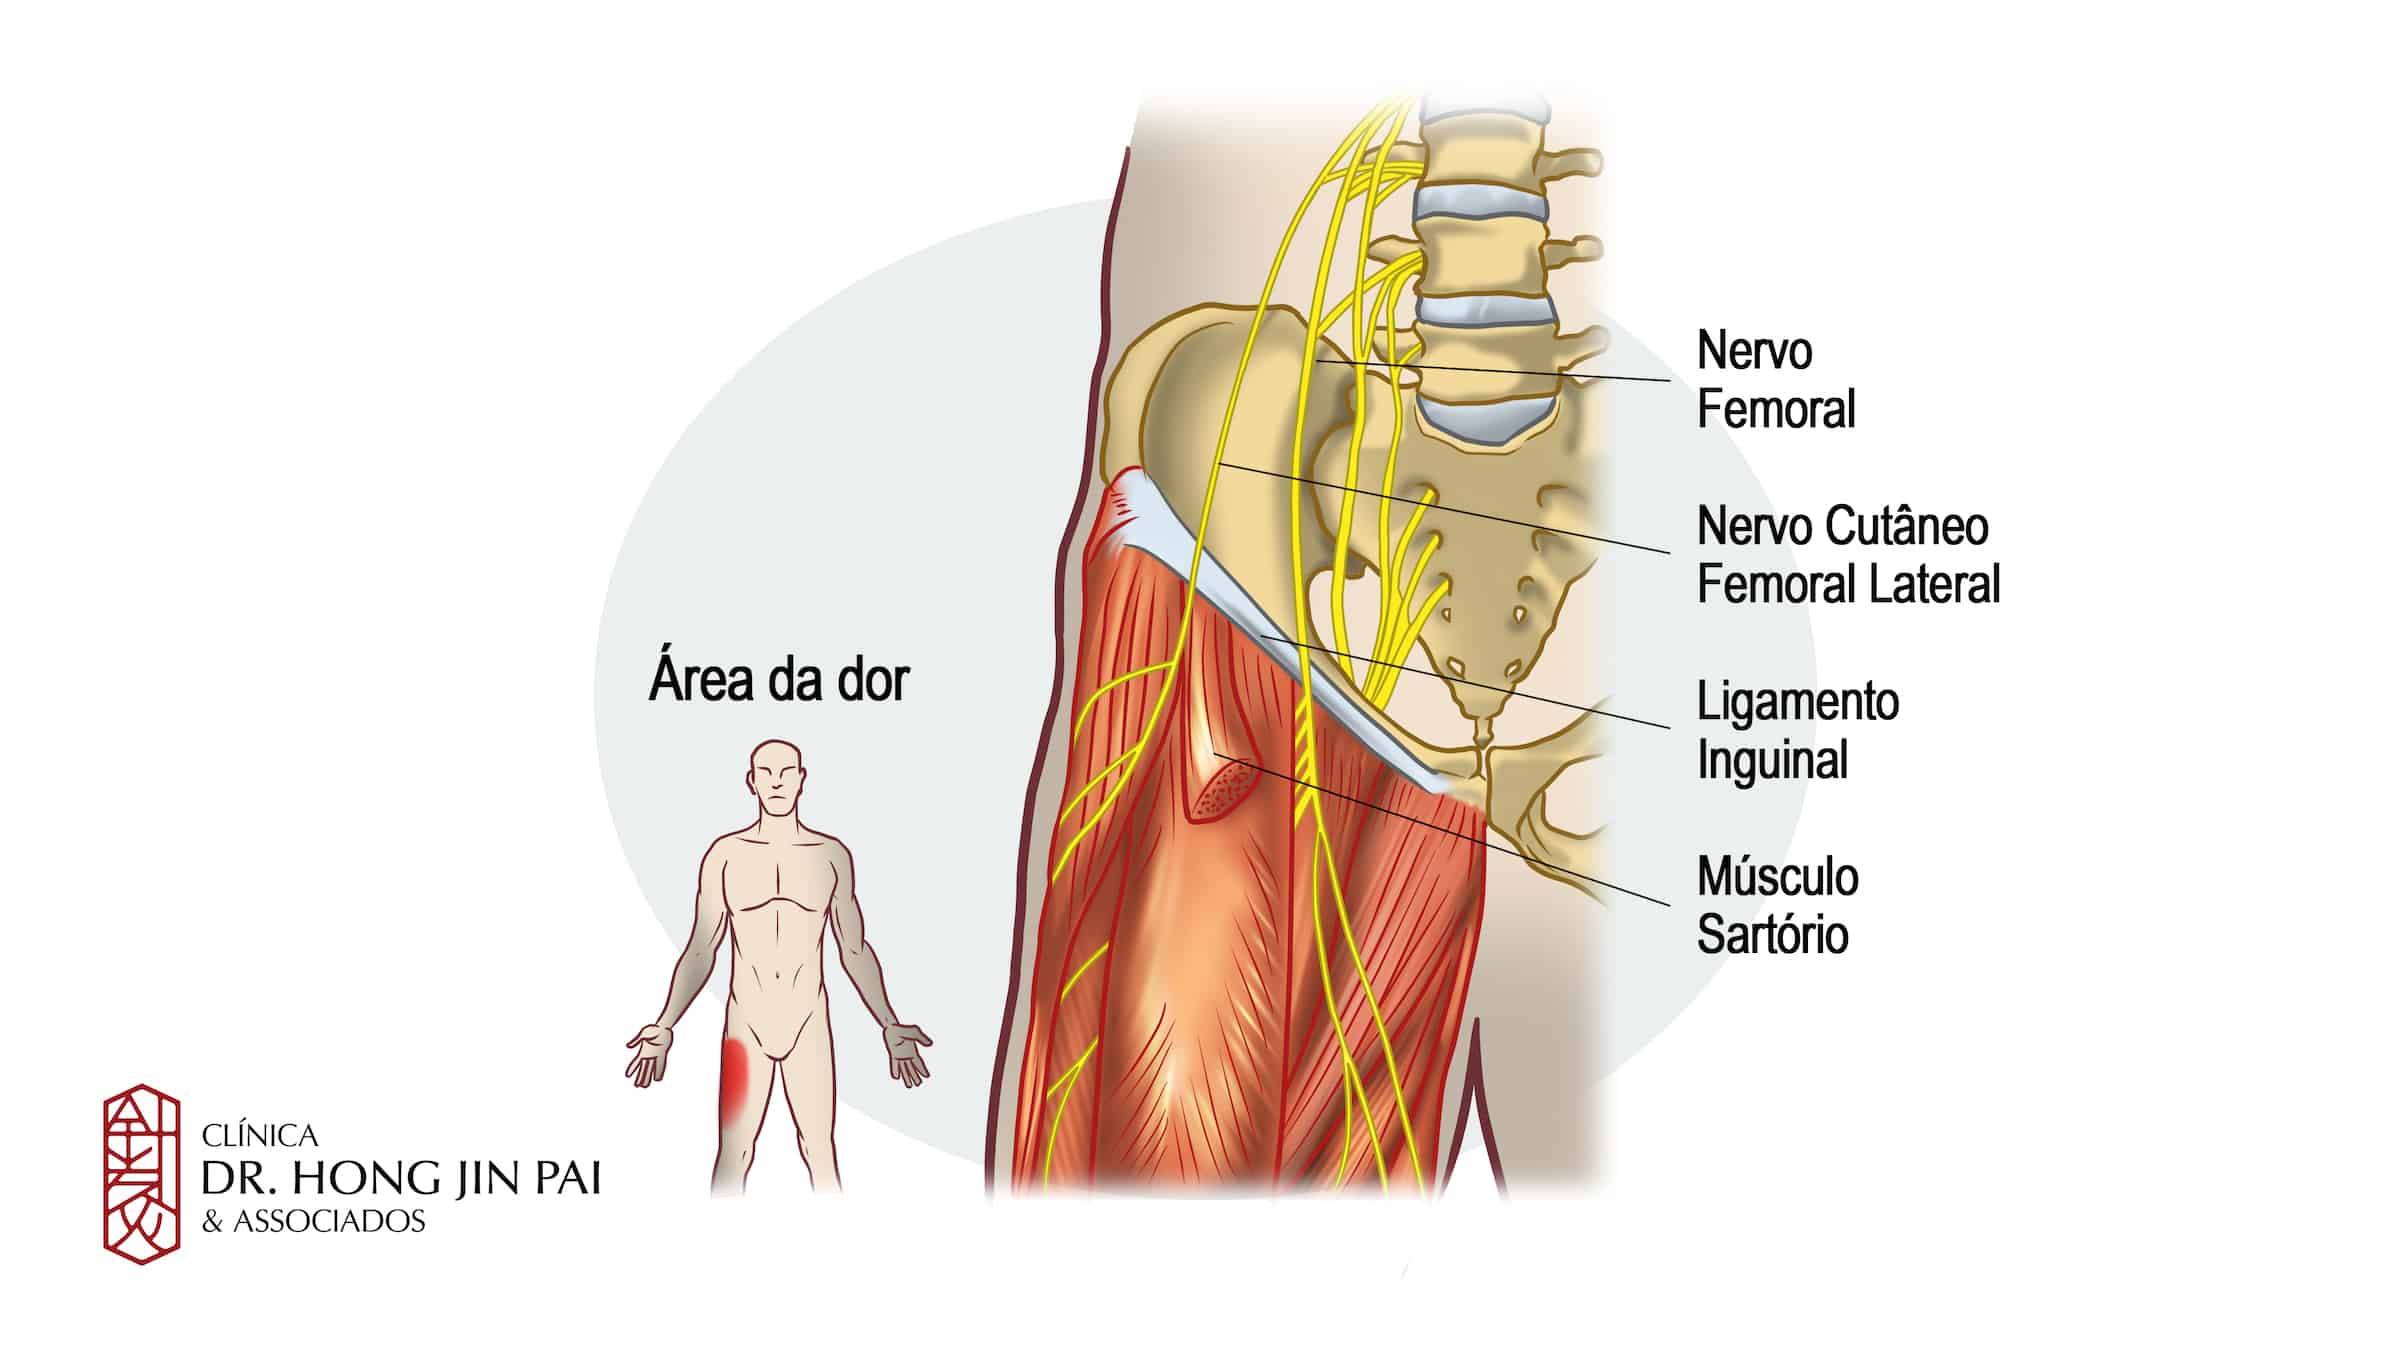 Meralgia parestesica pode dar dor e formigamento na regiao anterior da coxa